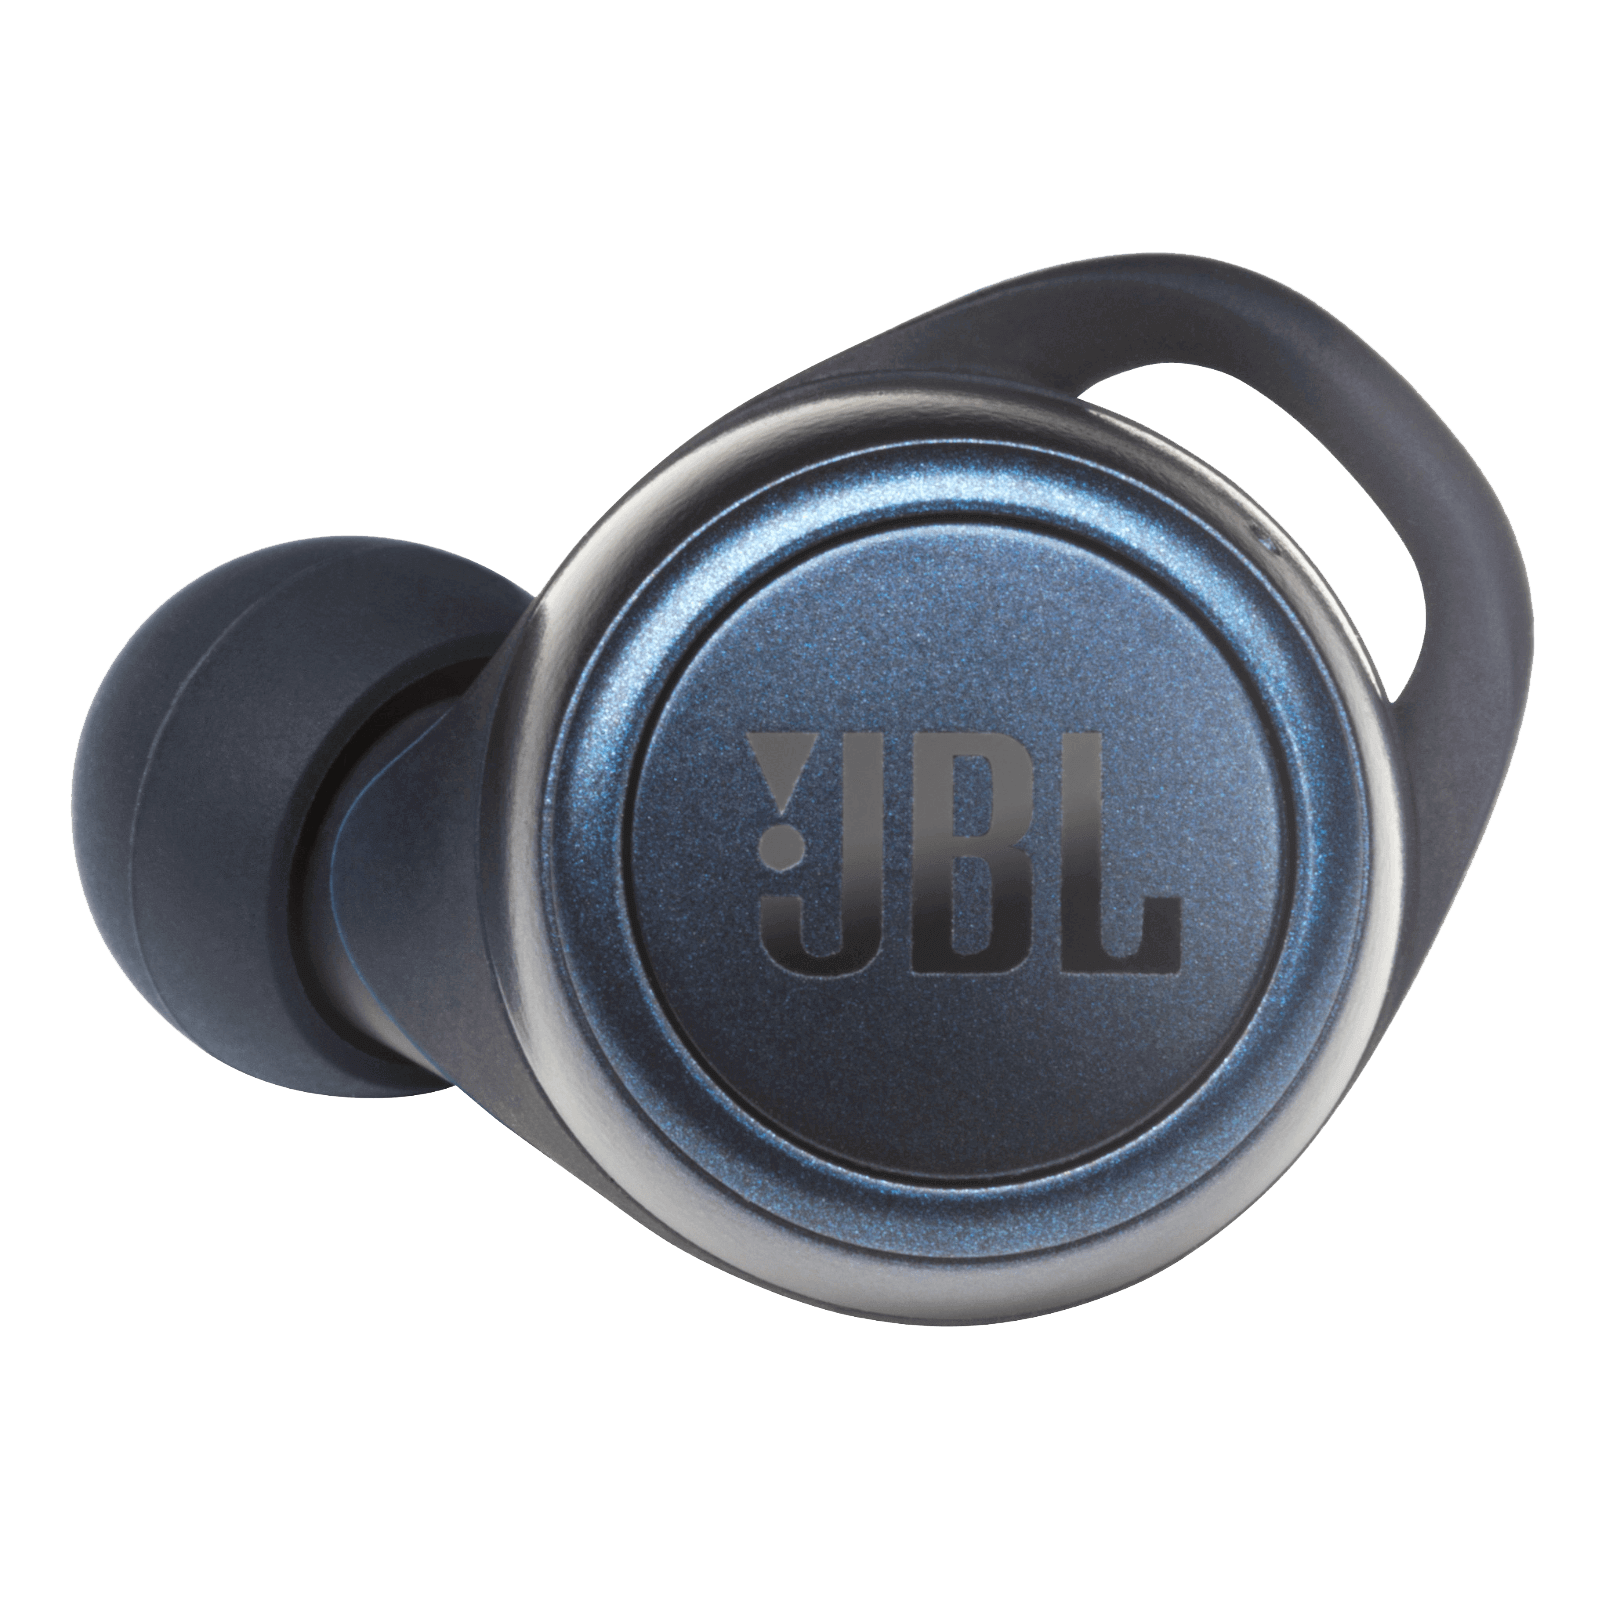 JBL Live 300TWS - Blue - True wireless earbuds - Detailshot 2